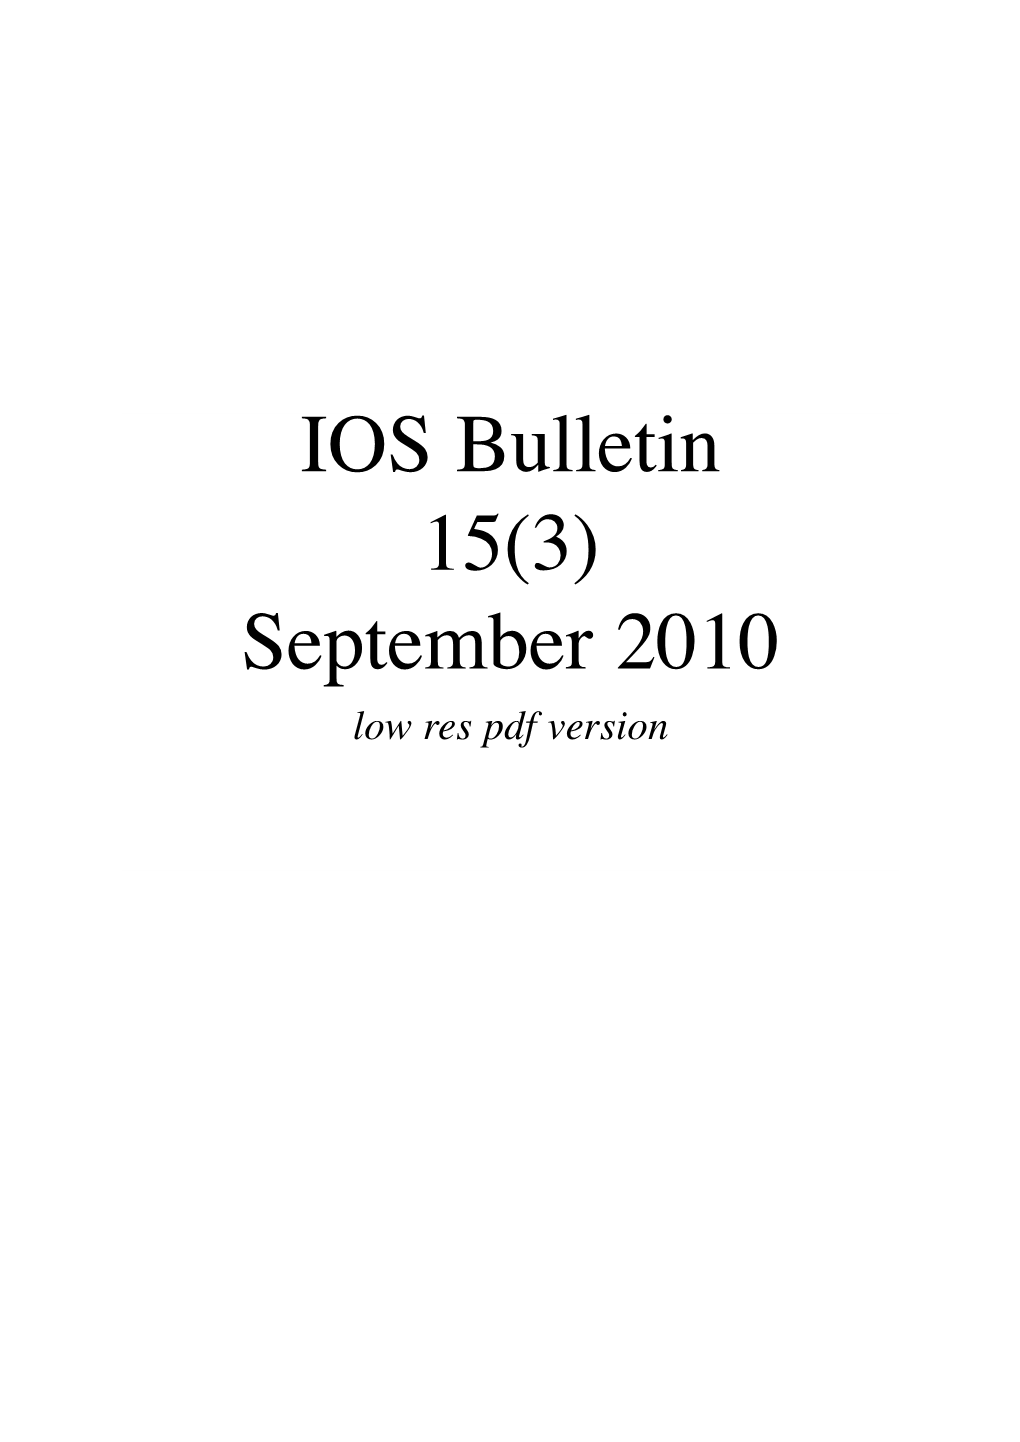 2010 IOS Bull 15(3)